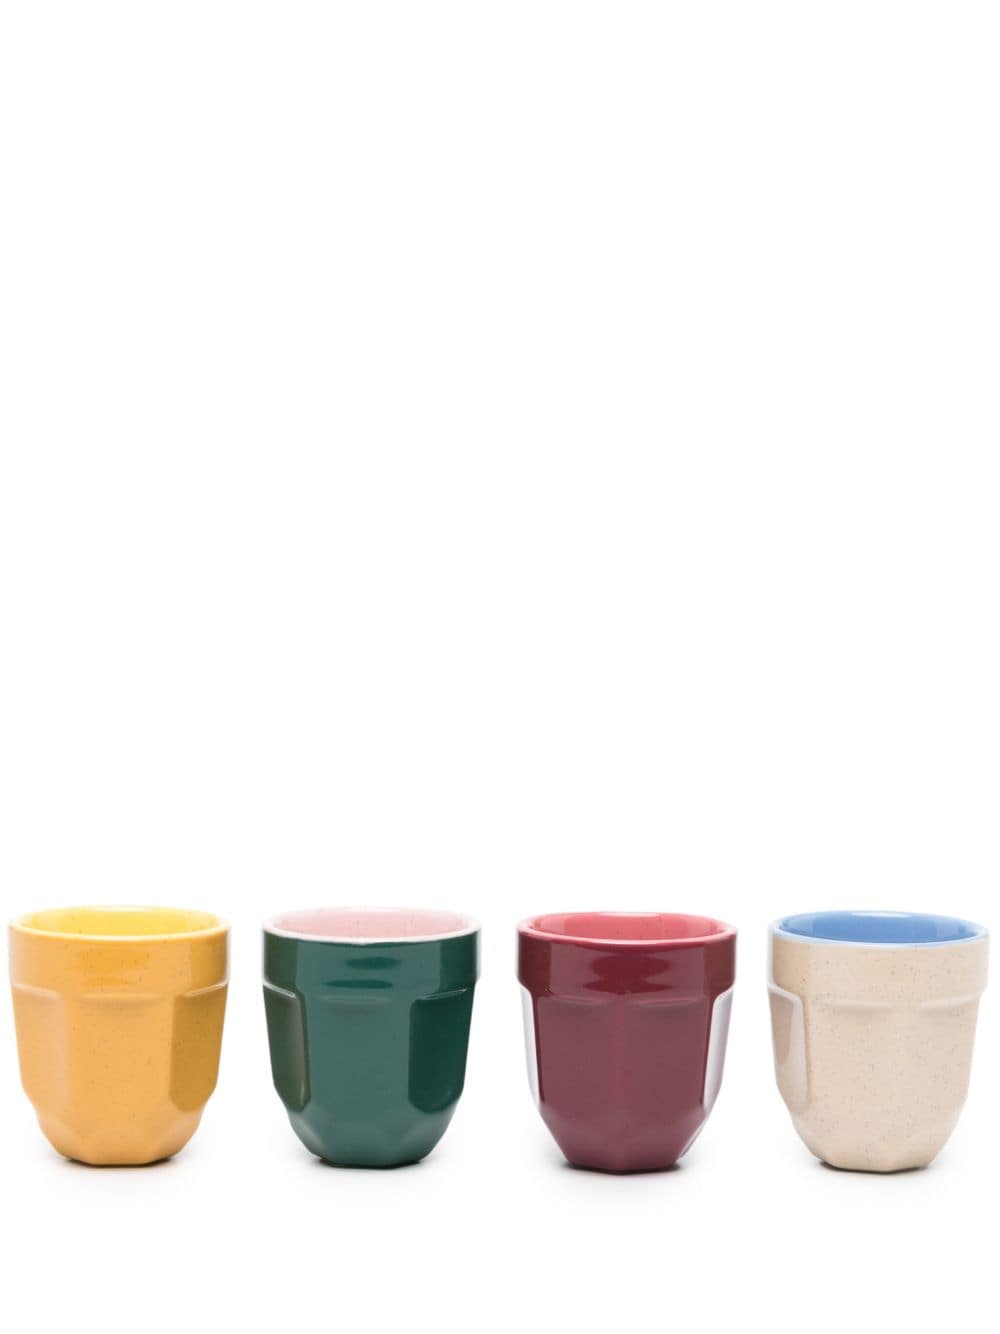 Polspotten X La Marzocco 浓缩咖啡杯套装 (四件装) In Multicolour